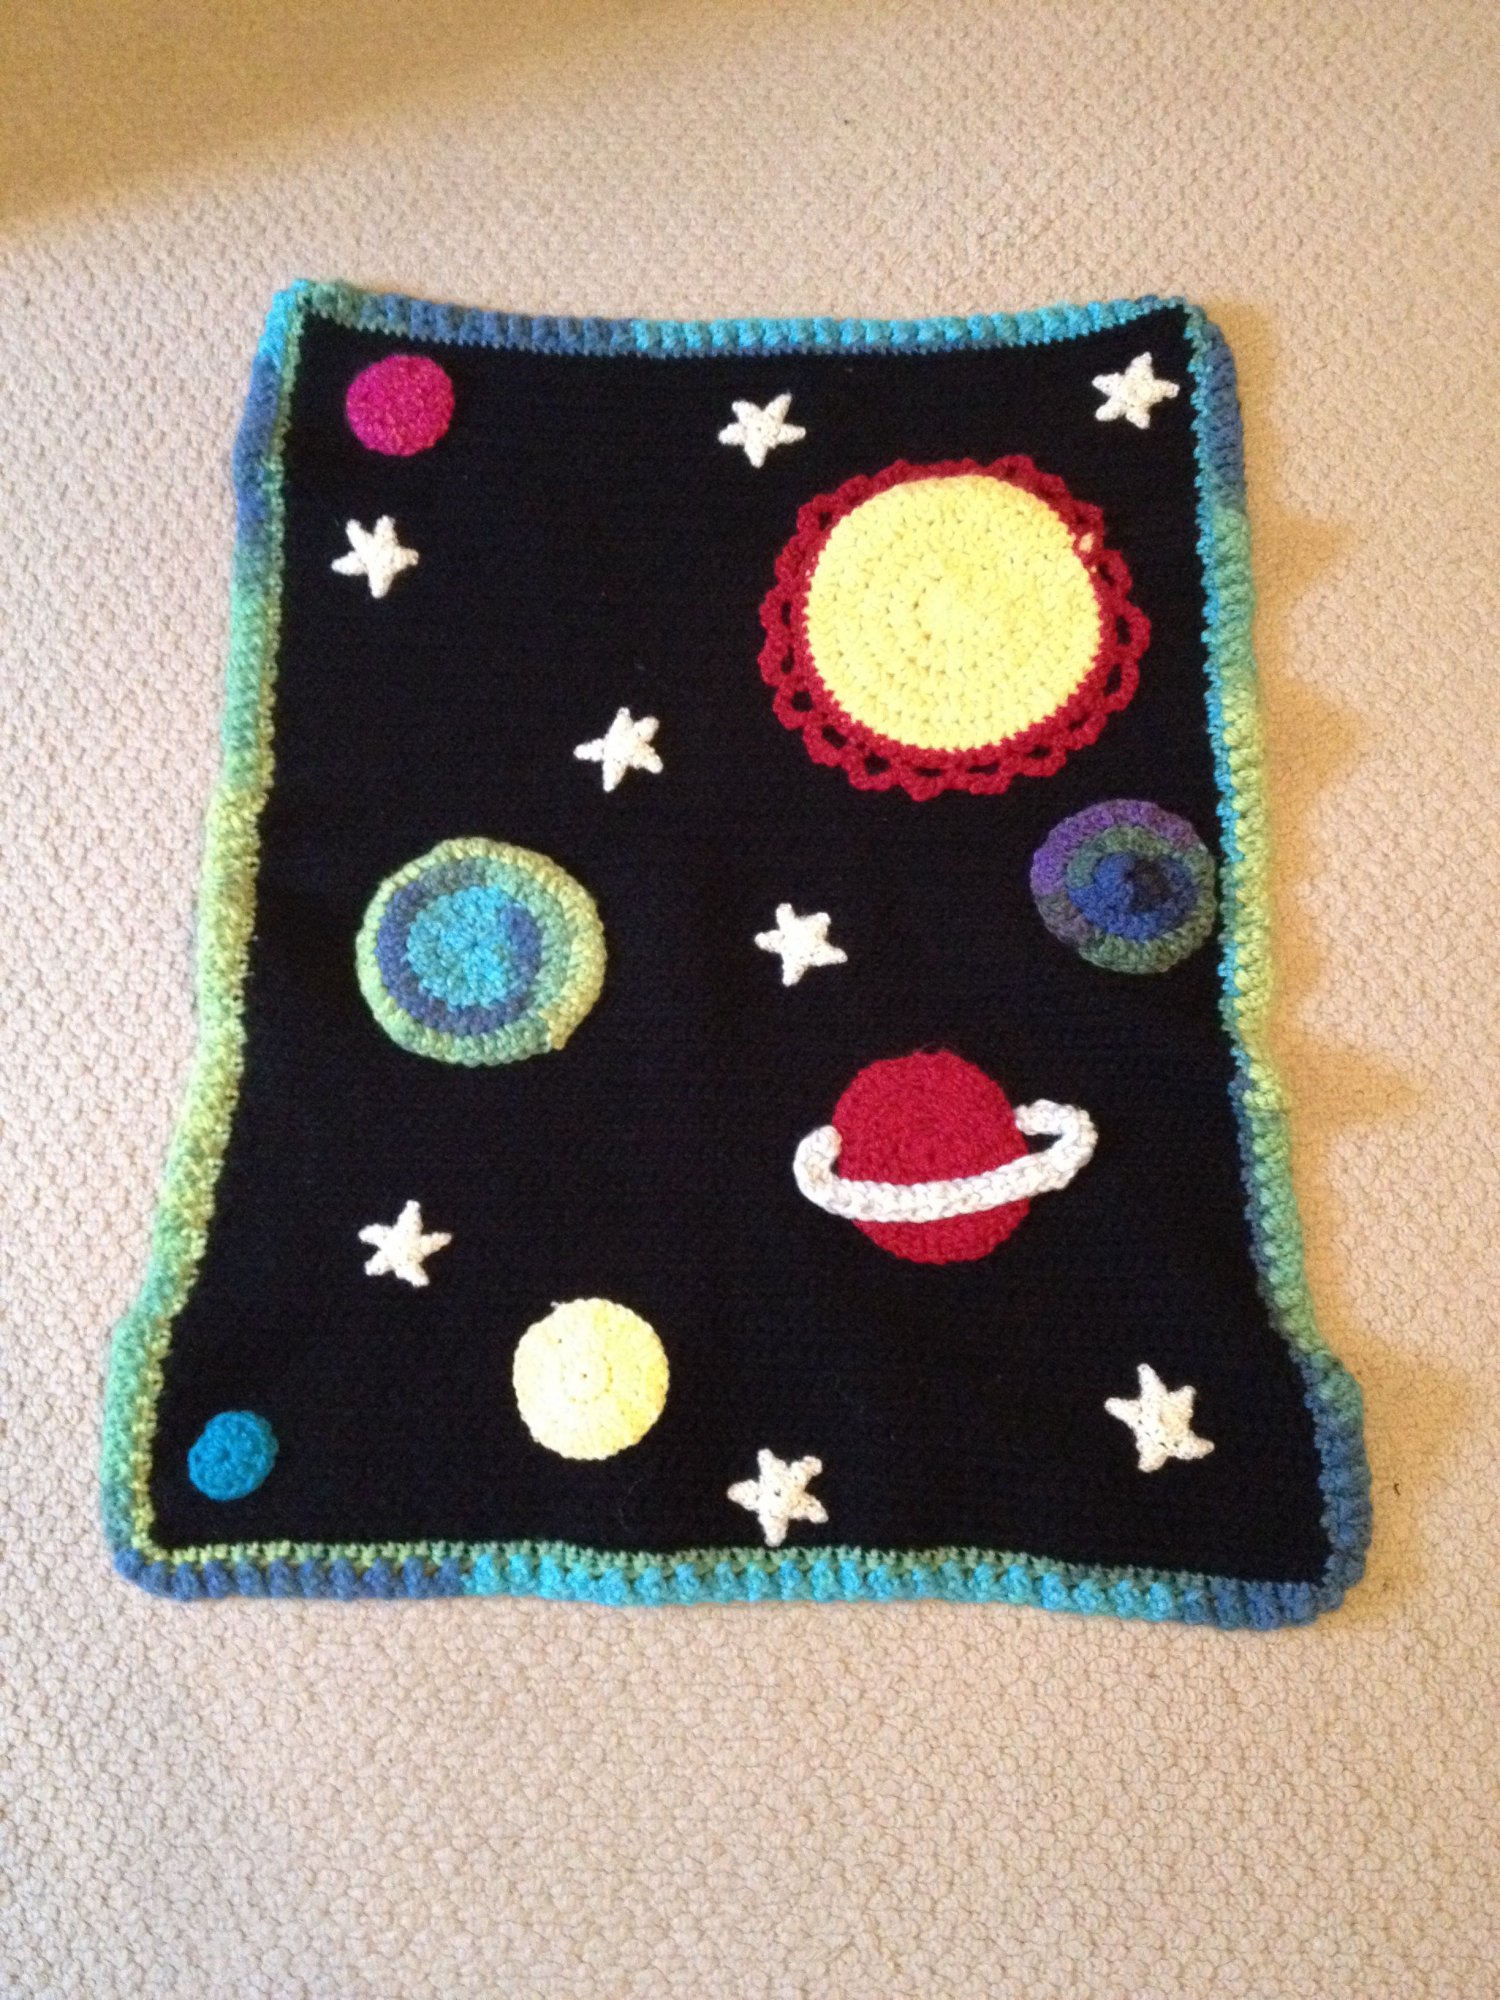 Space themed crochet blanket